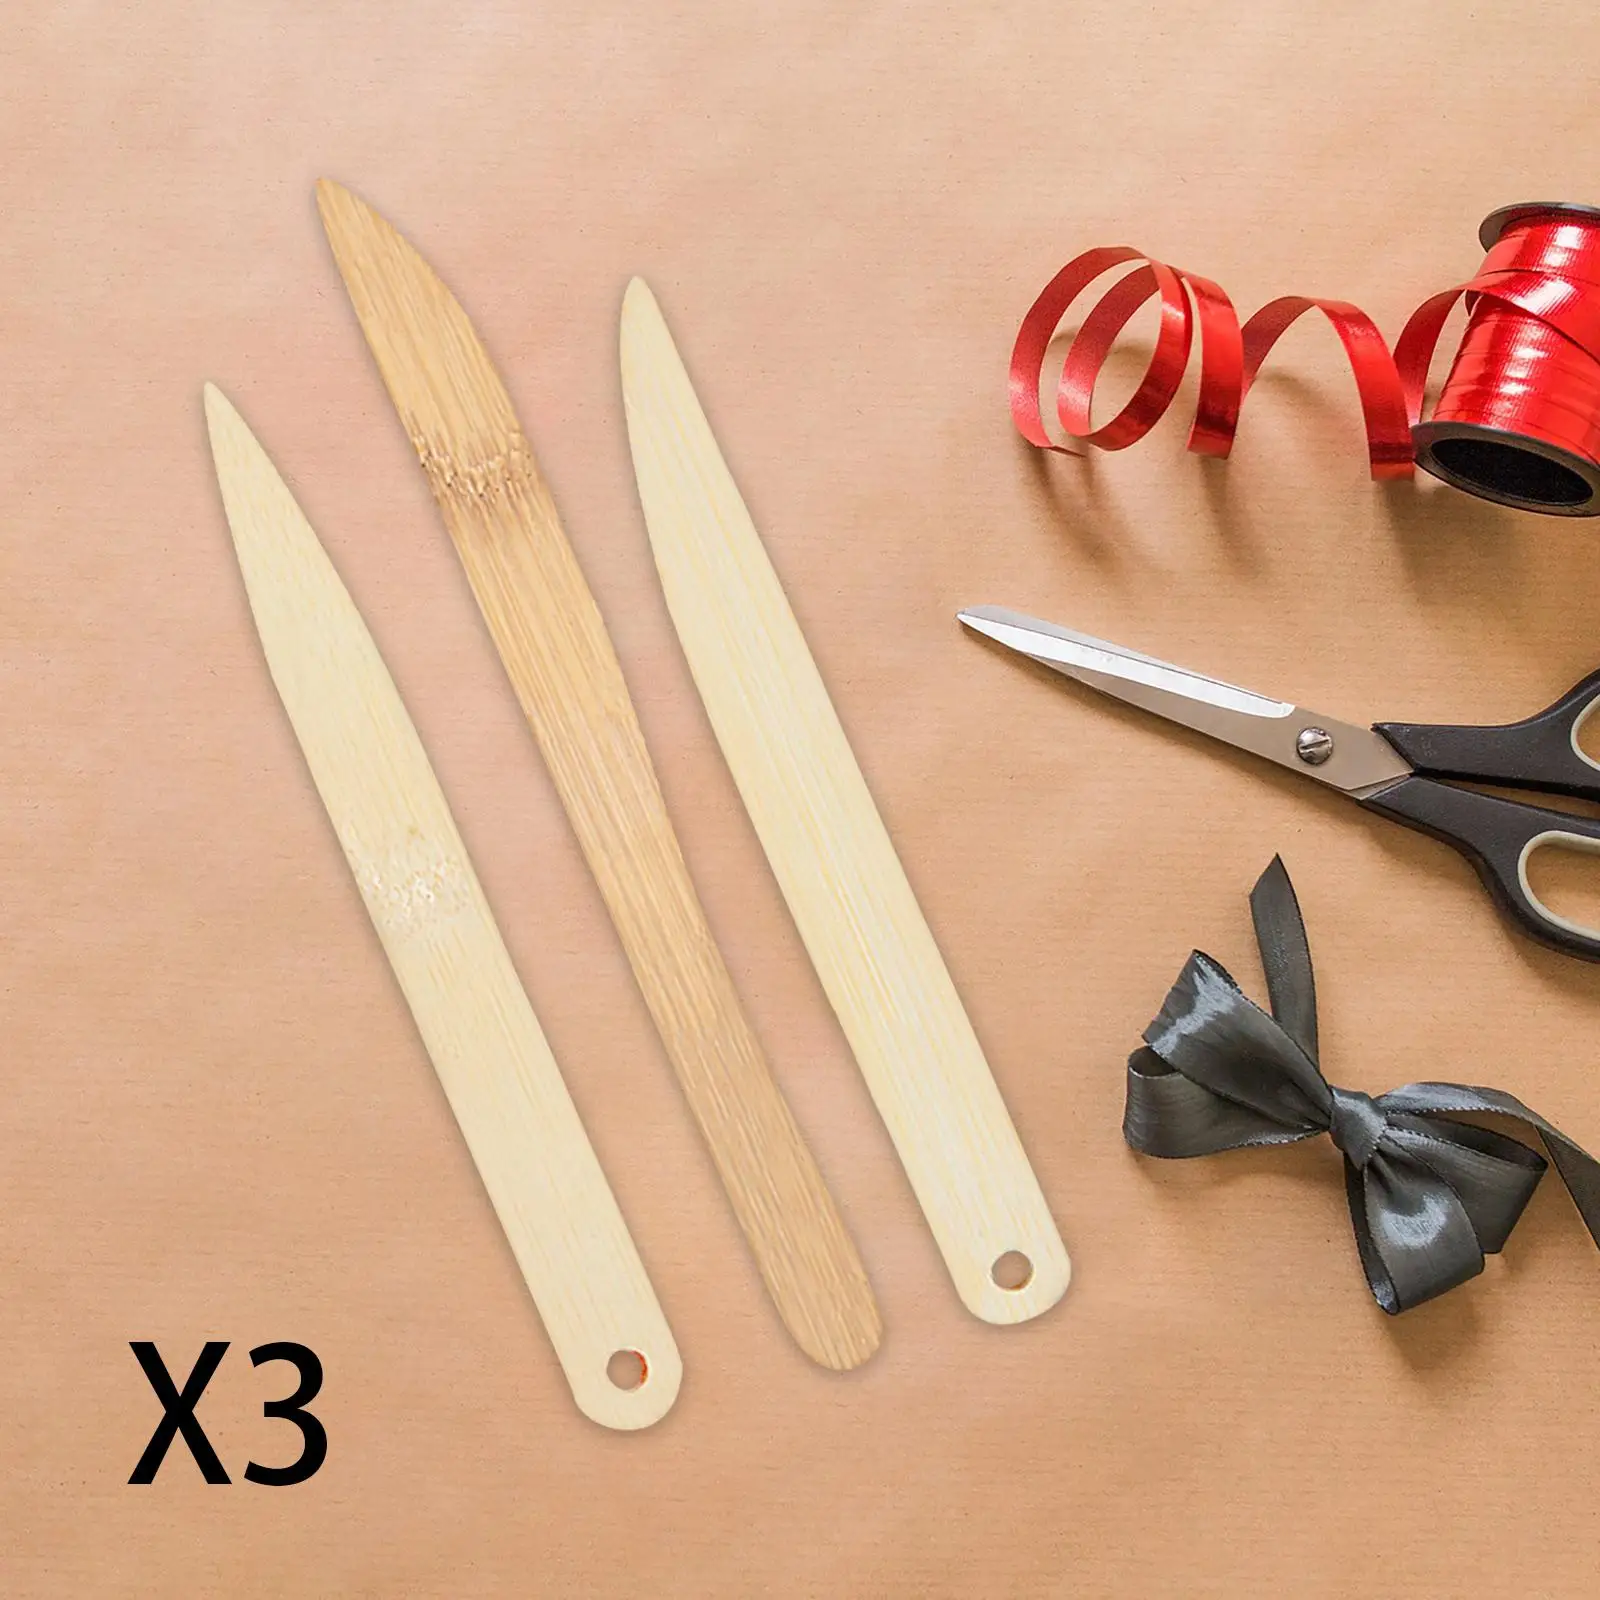 9x Envelope Slitter Office Scrapbooking Tool Set Lightweight Gifts Crafts Paper Sculpture Supplies Paper Trimmer Supplies Wooden